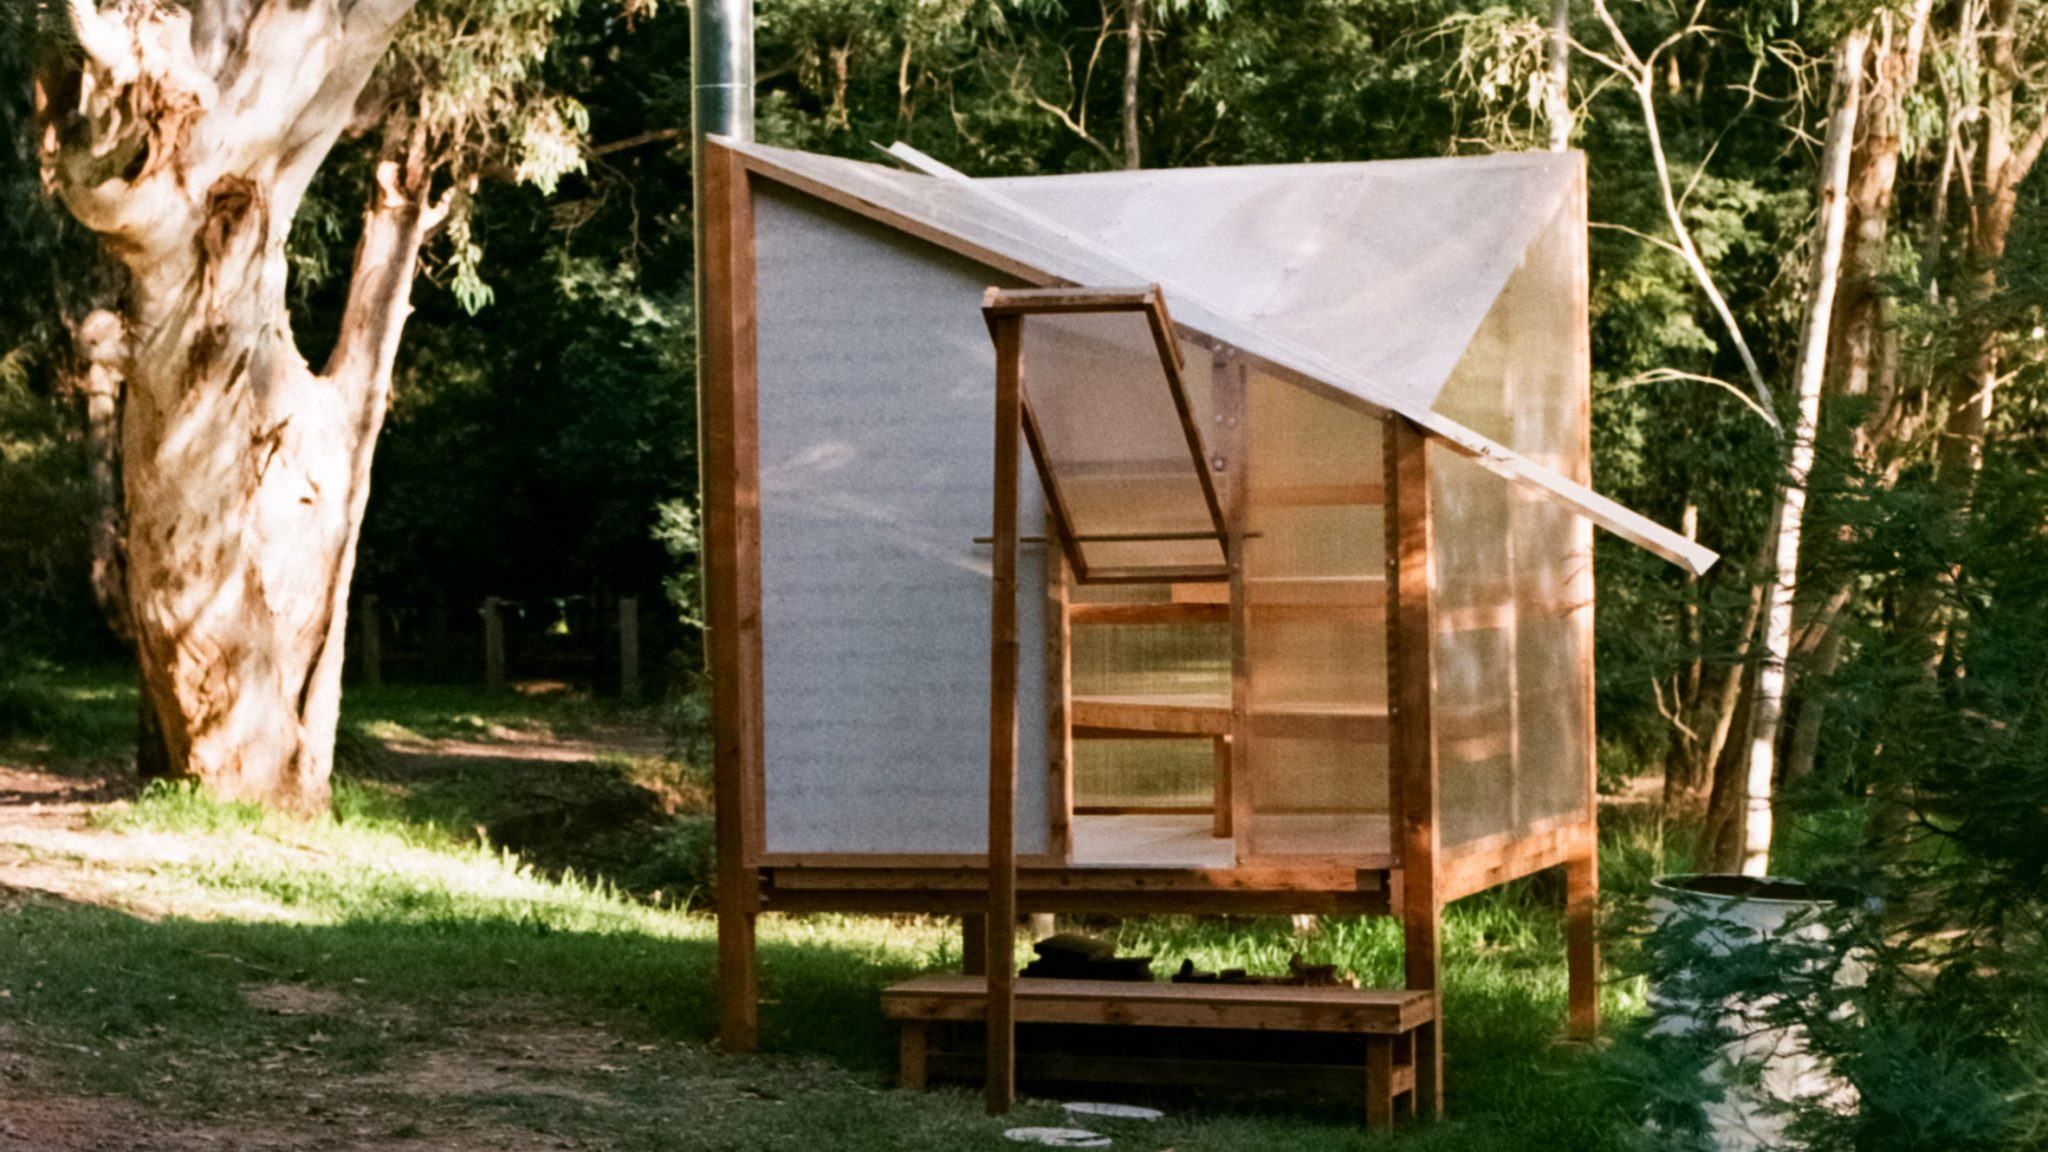 Никакой приватности: в Австралии установили передвижную сауну с полупрозрачными стенками – фото